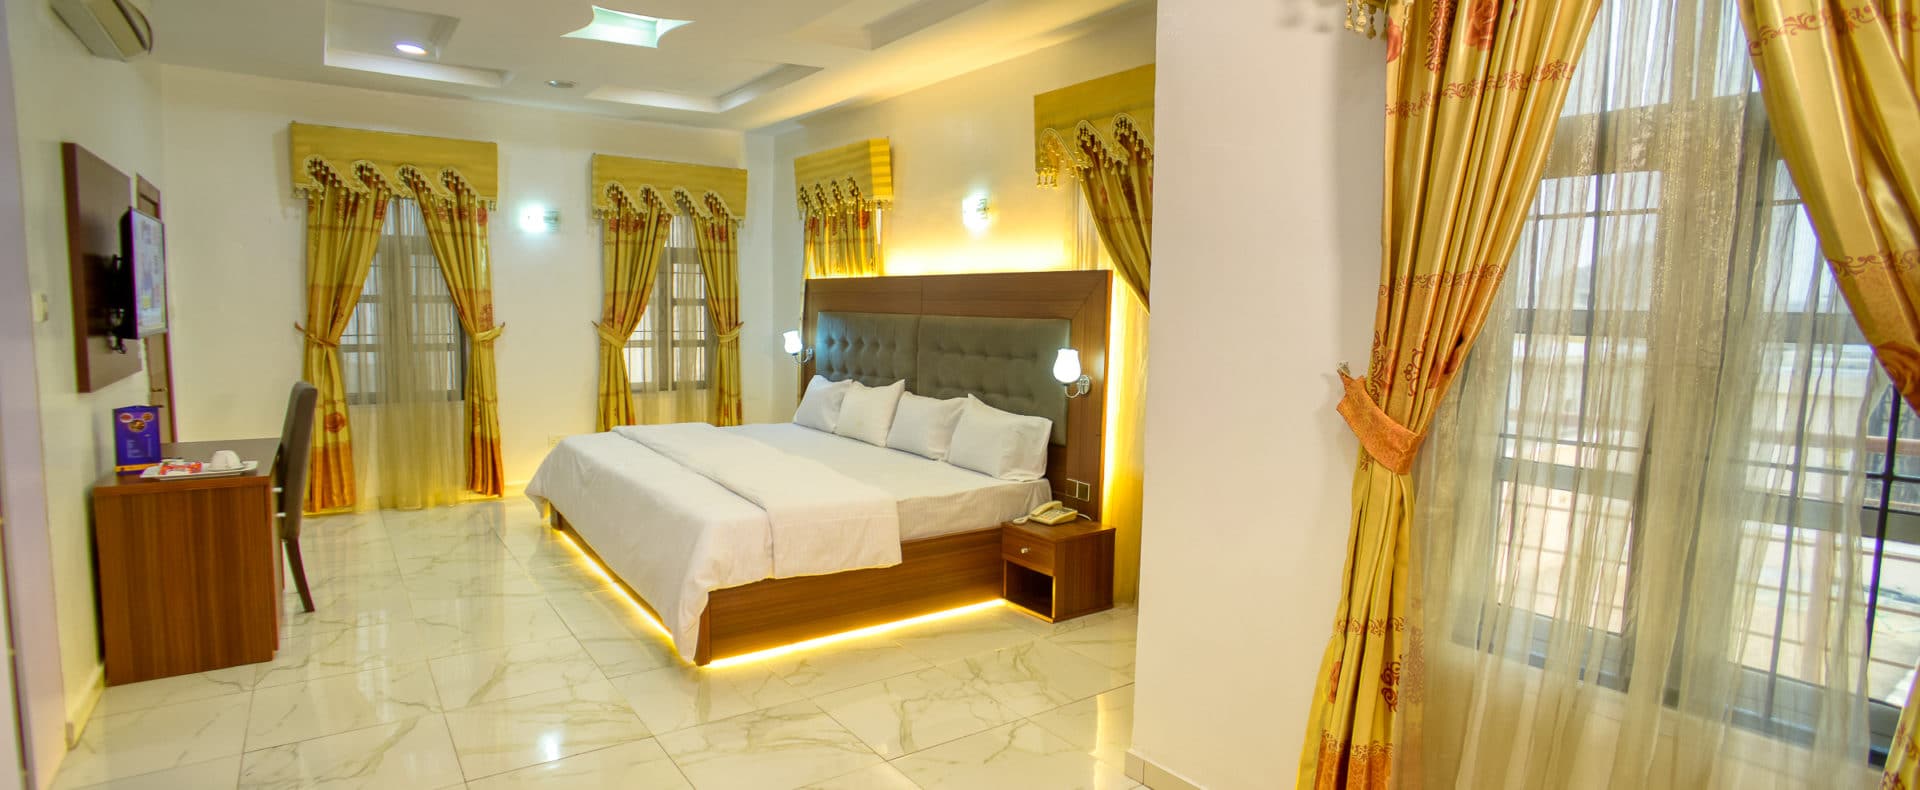 Hotel Marigold In Chevron Nigeria